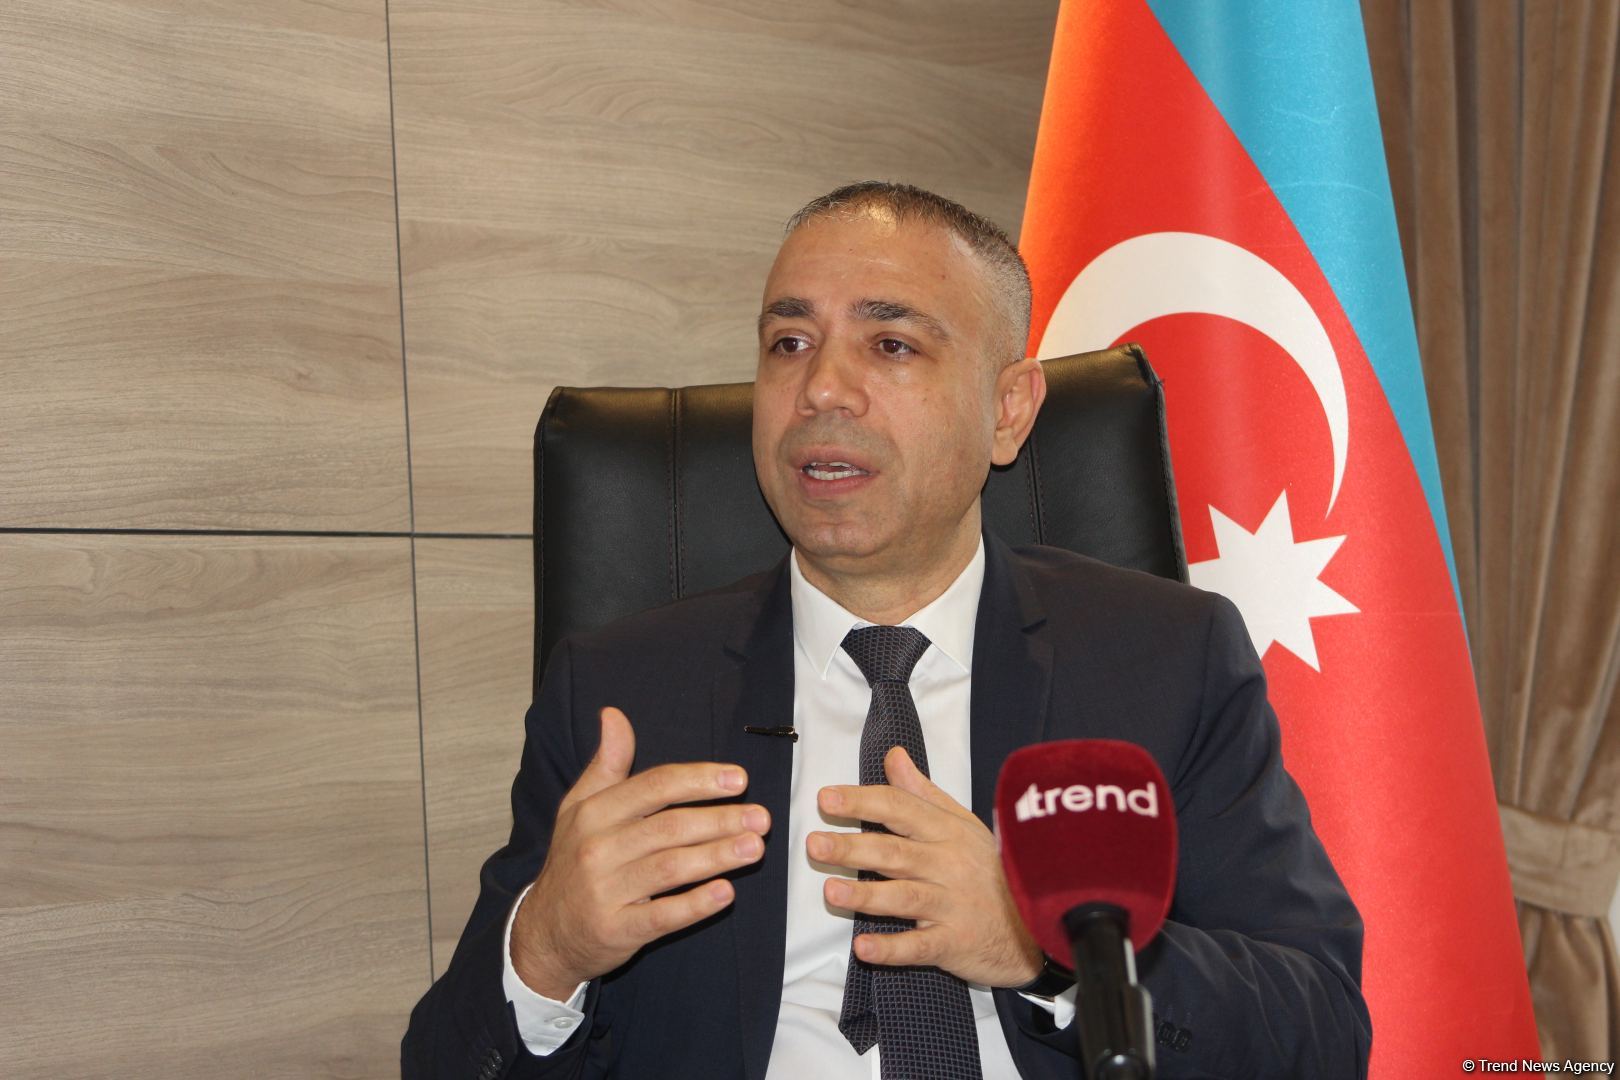 Сотрудничество Азербайджана в области ВИЭ с зарубежными партнерами имеет большие перспективы - замминистра (ФОТО)